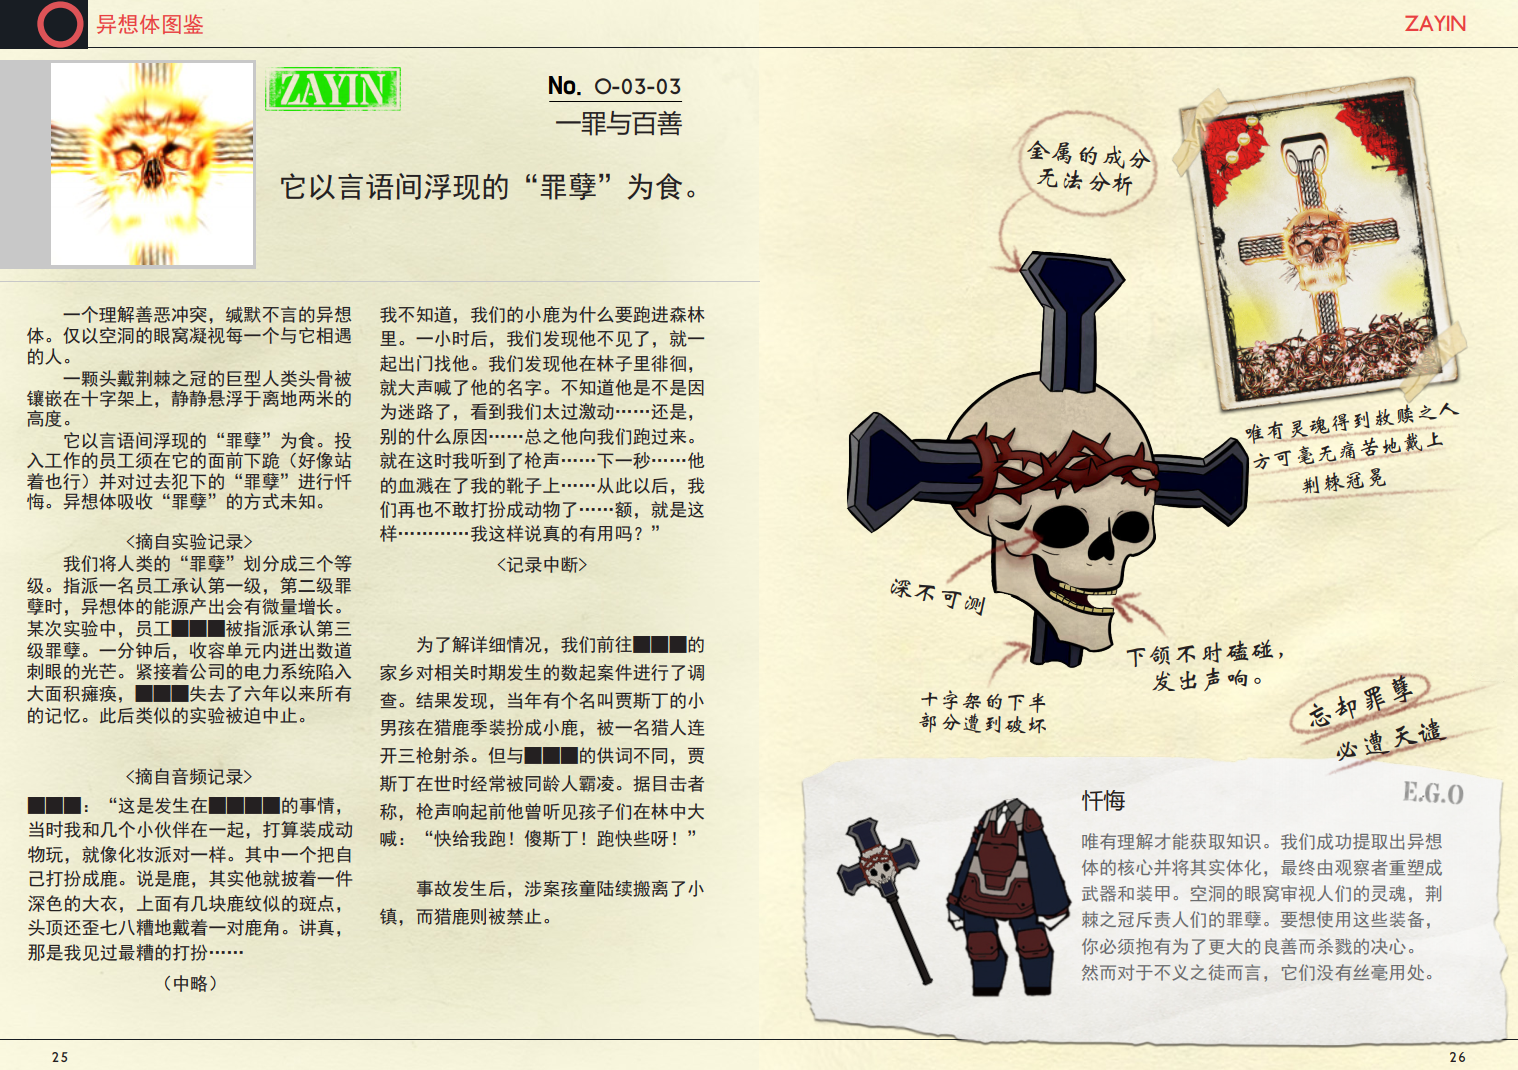 模拟经营游戏《脑叶公司》画册 现已增加官方中文 